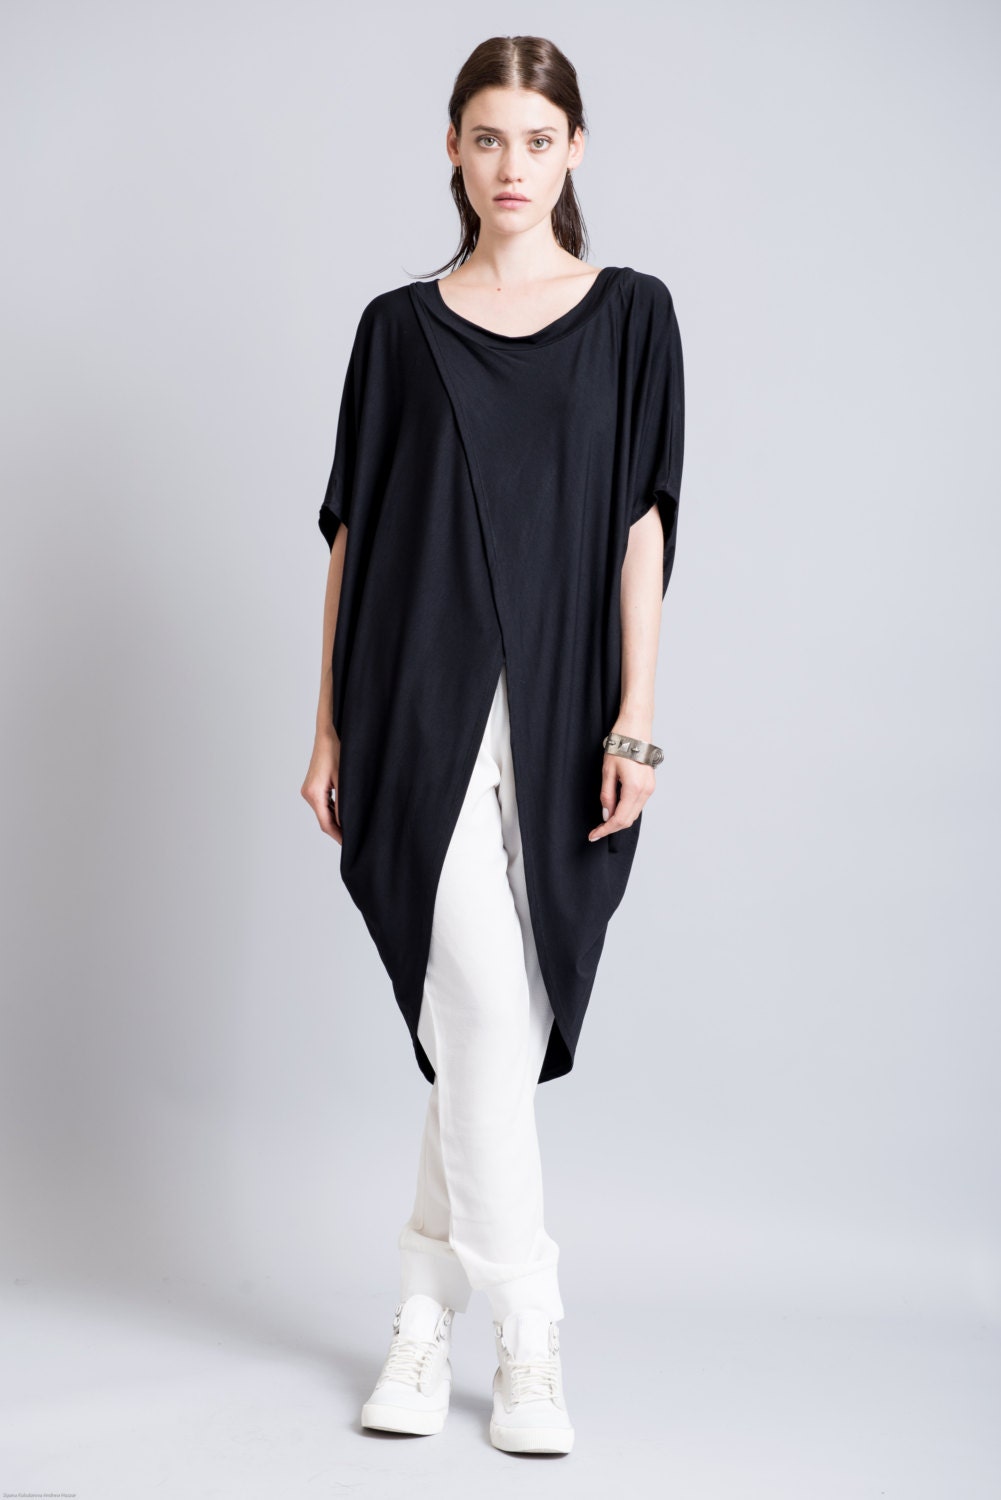 Short Sleeve Tunic Top/ Black Asymmetric Blouse/ Extravagant